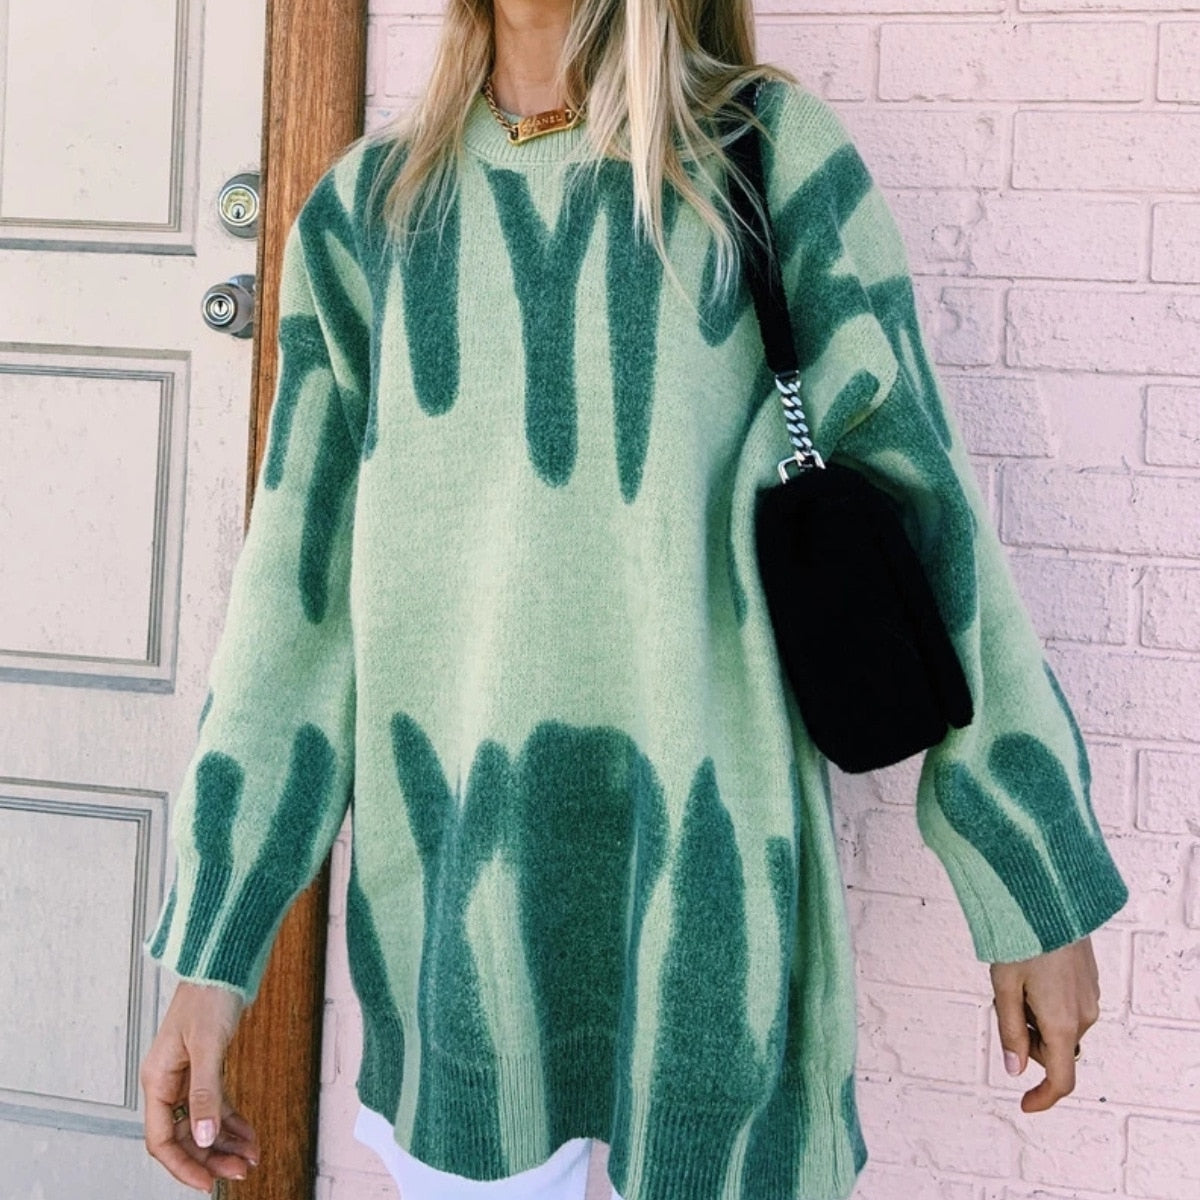 Women Knitted Sweater Vintage Green Striped Print Sweater Oversized Pullovers Winter Streetwear Long Sweaters Tie Dye Outerwear LUXLIFE BRANDS